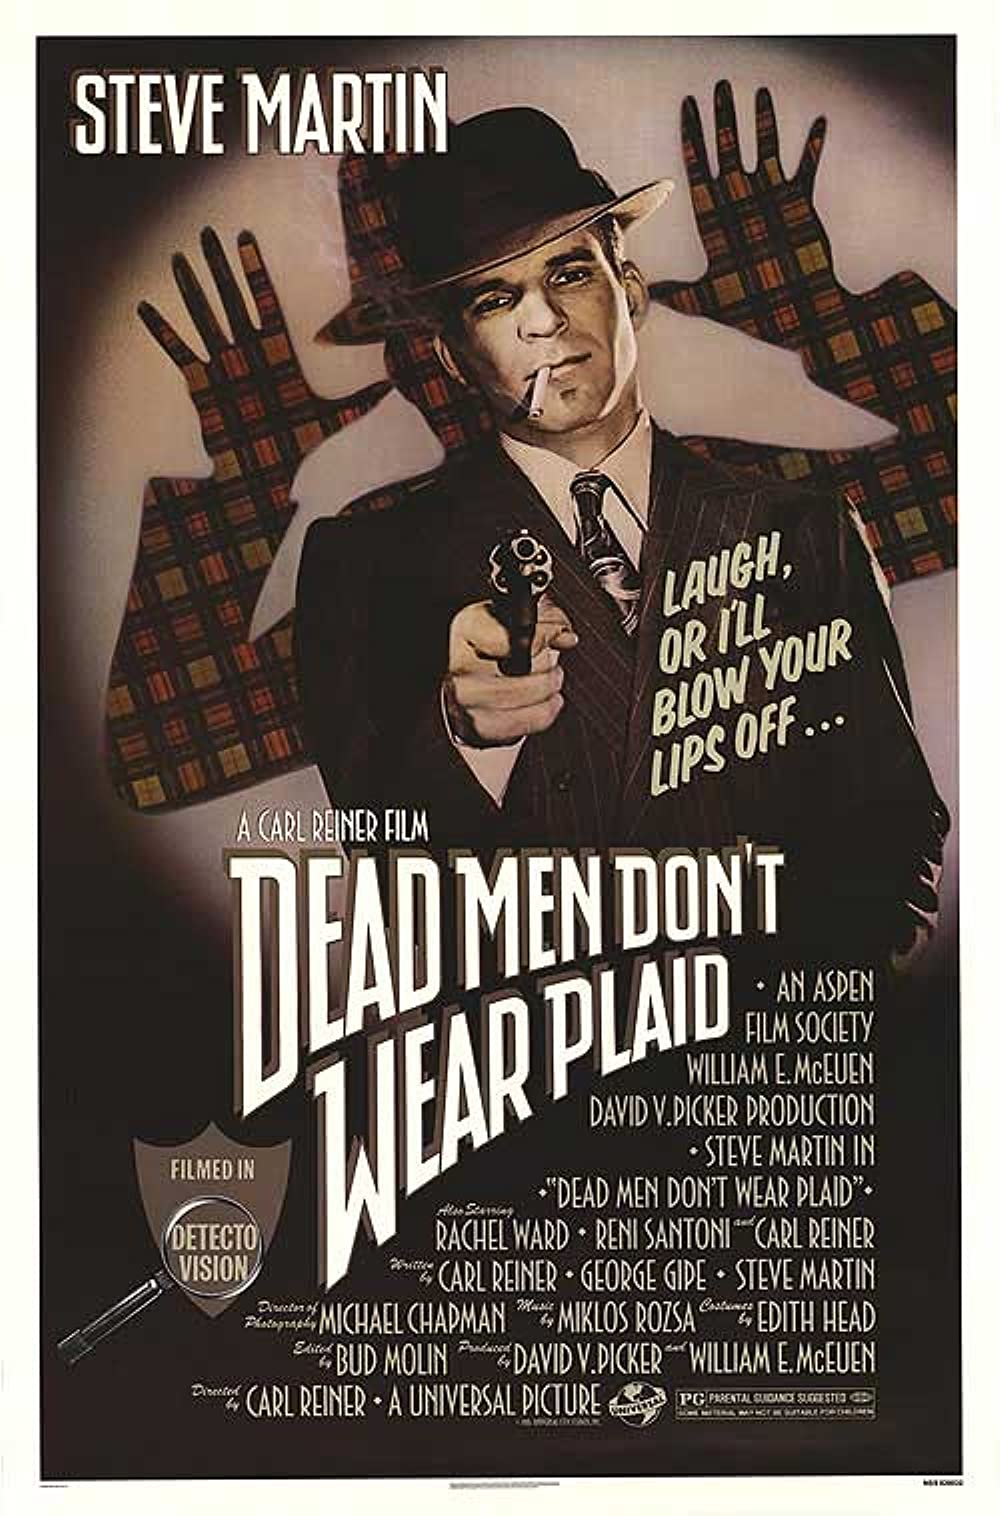 Filmbeschreibung zu Dead Men Dont Wear Plaid